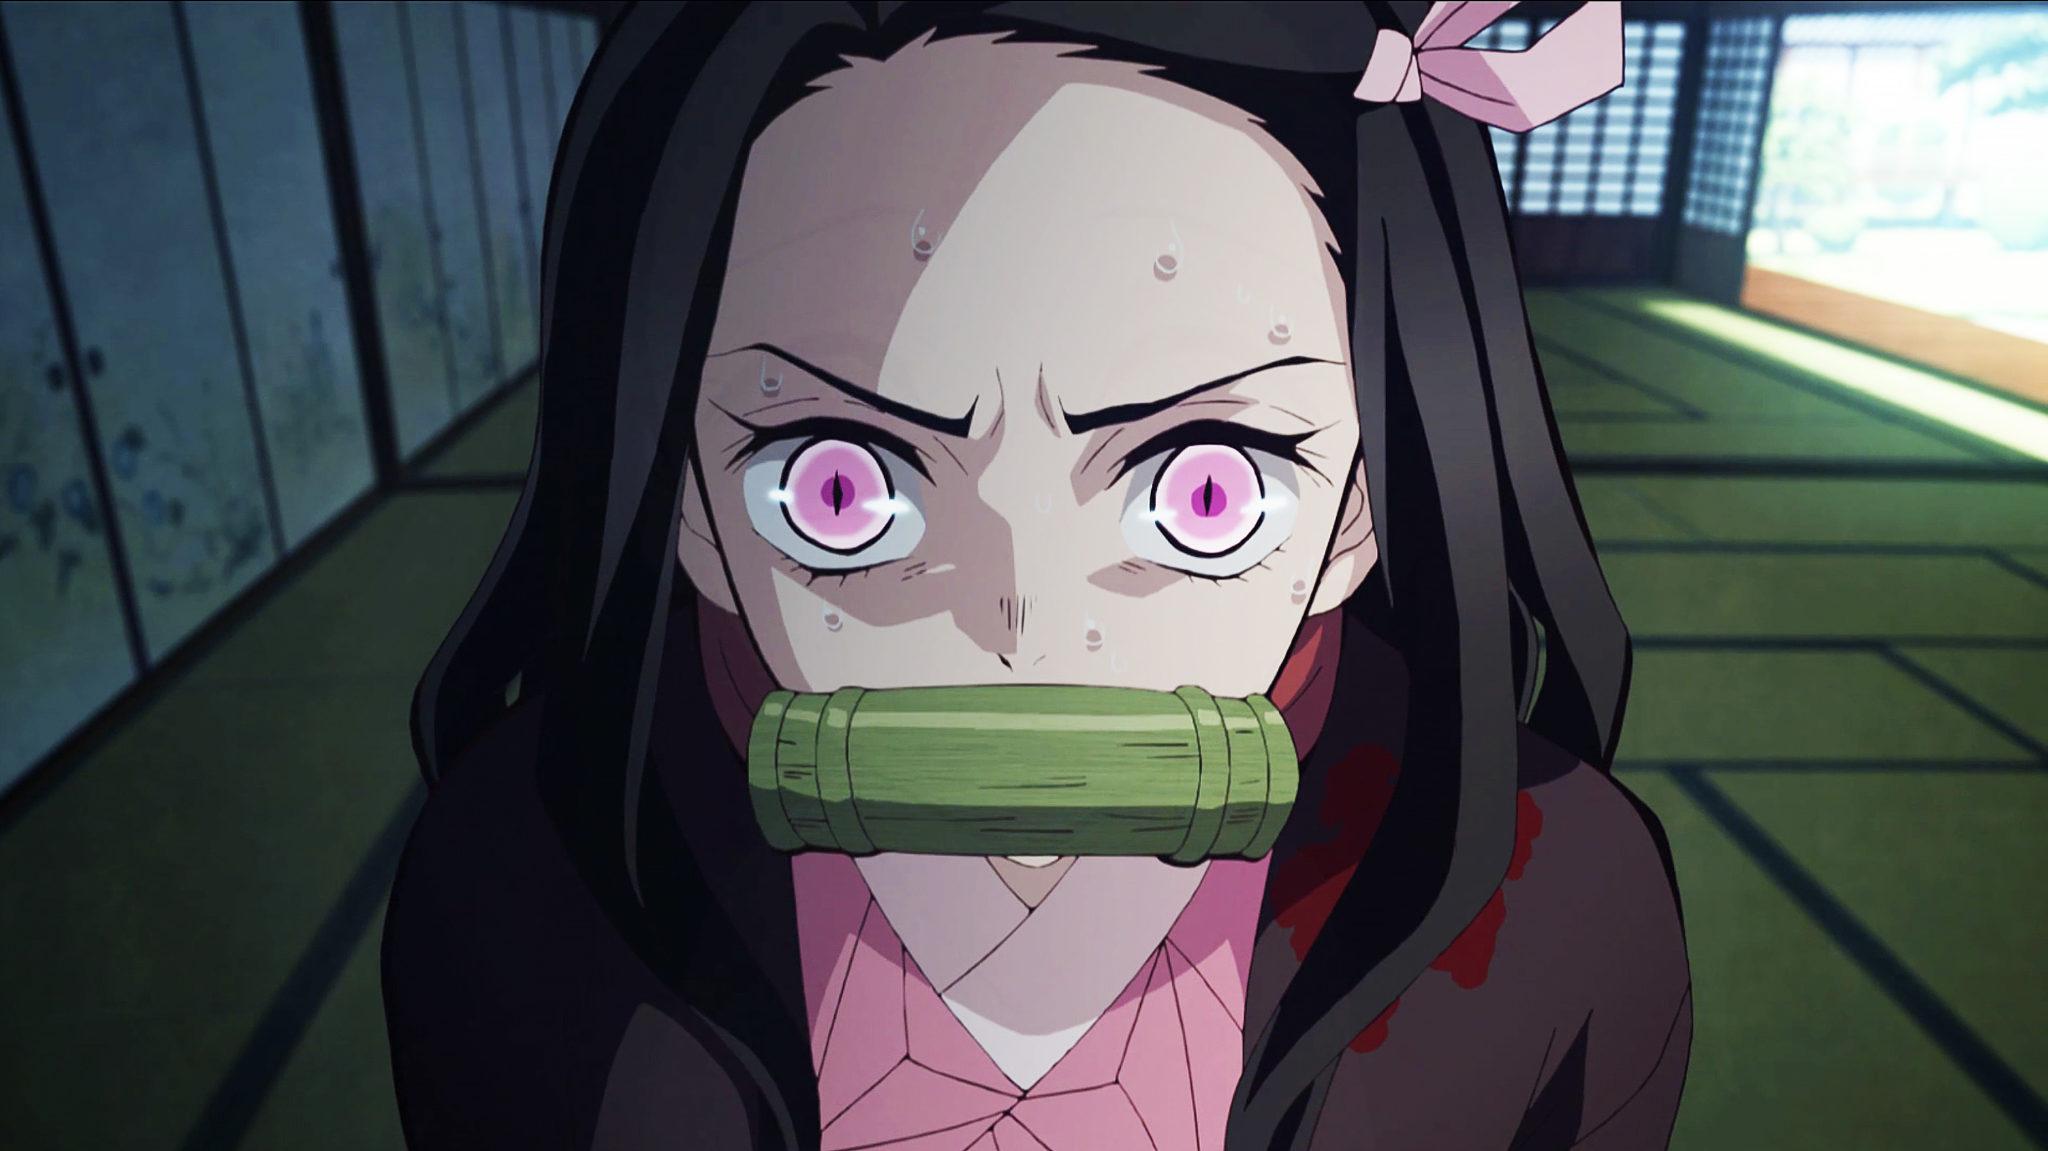 Screenshot of Nezuko angry in Demon Slayer anime.